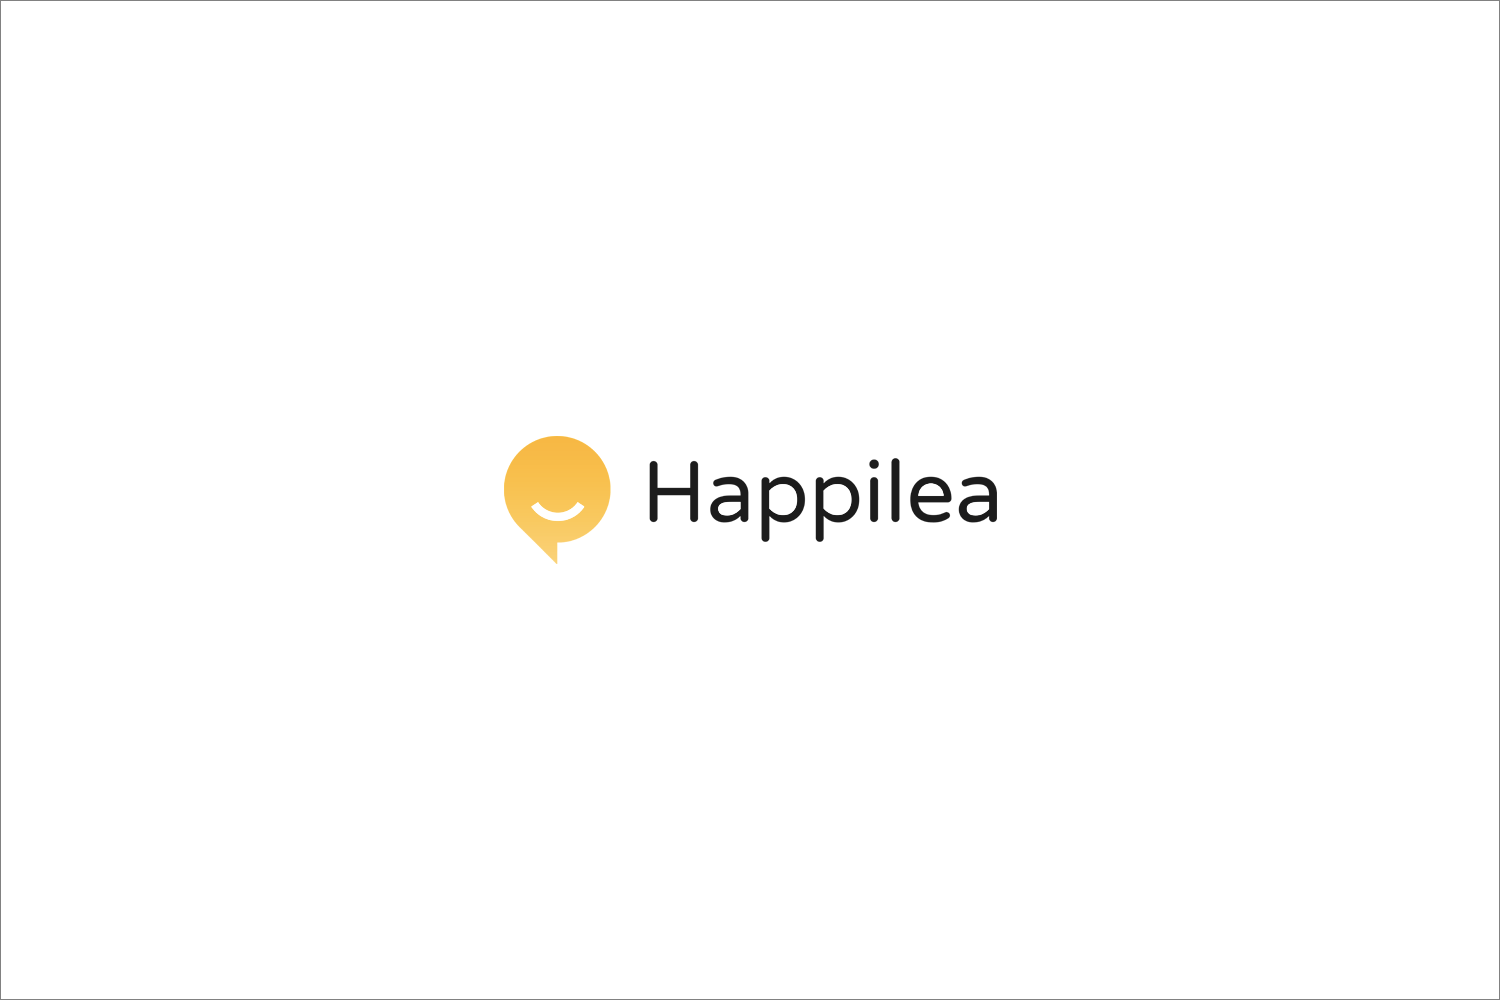 Happilea